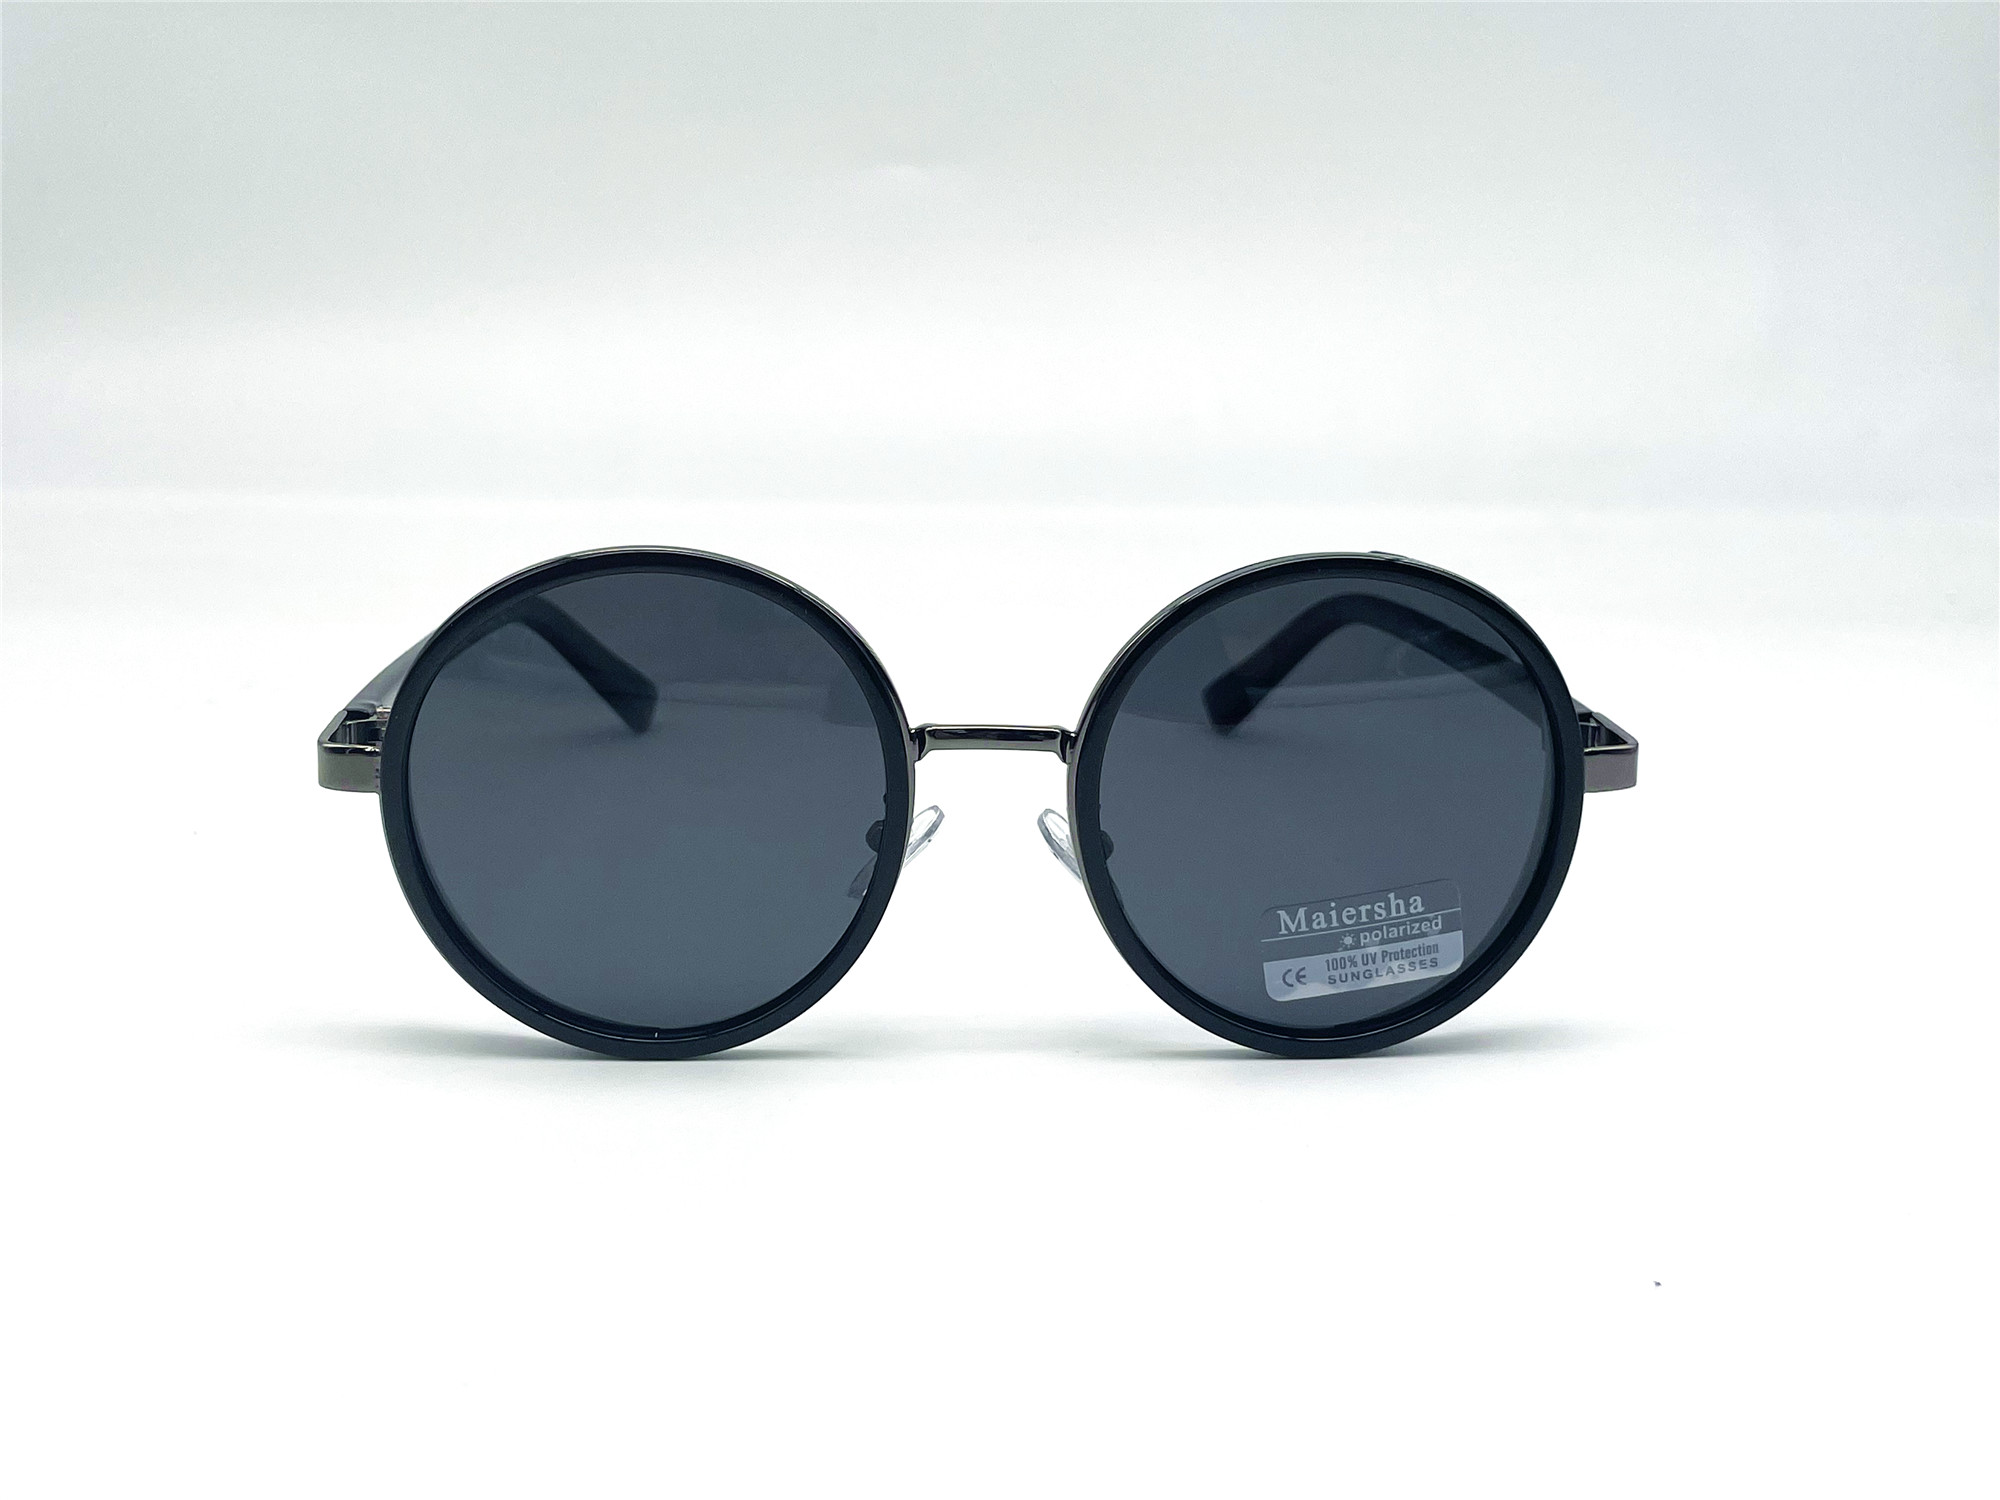  Солнцезащитные очки картинка Женские Maiersha Polarized Круглые 03794-C3 